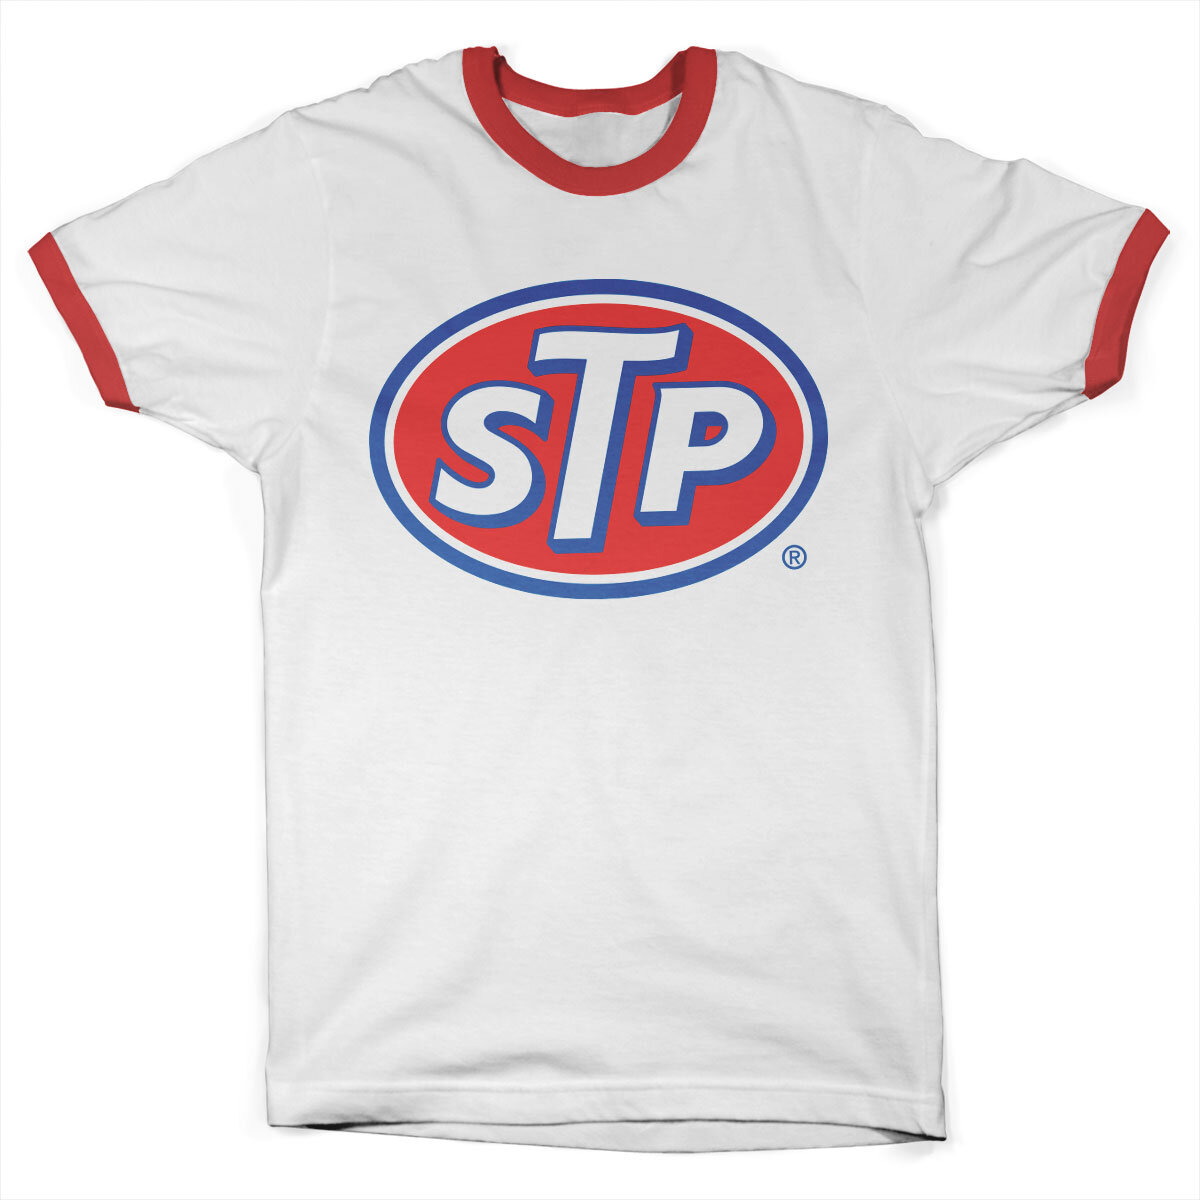 STP Classic Logo Ringer Tee